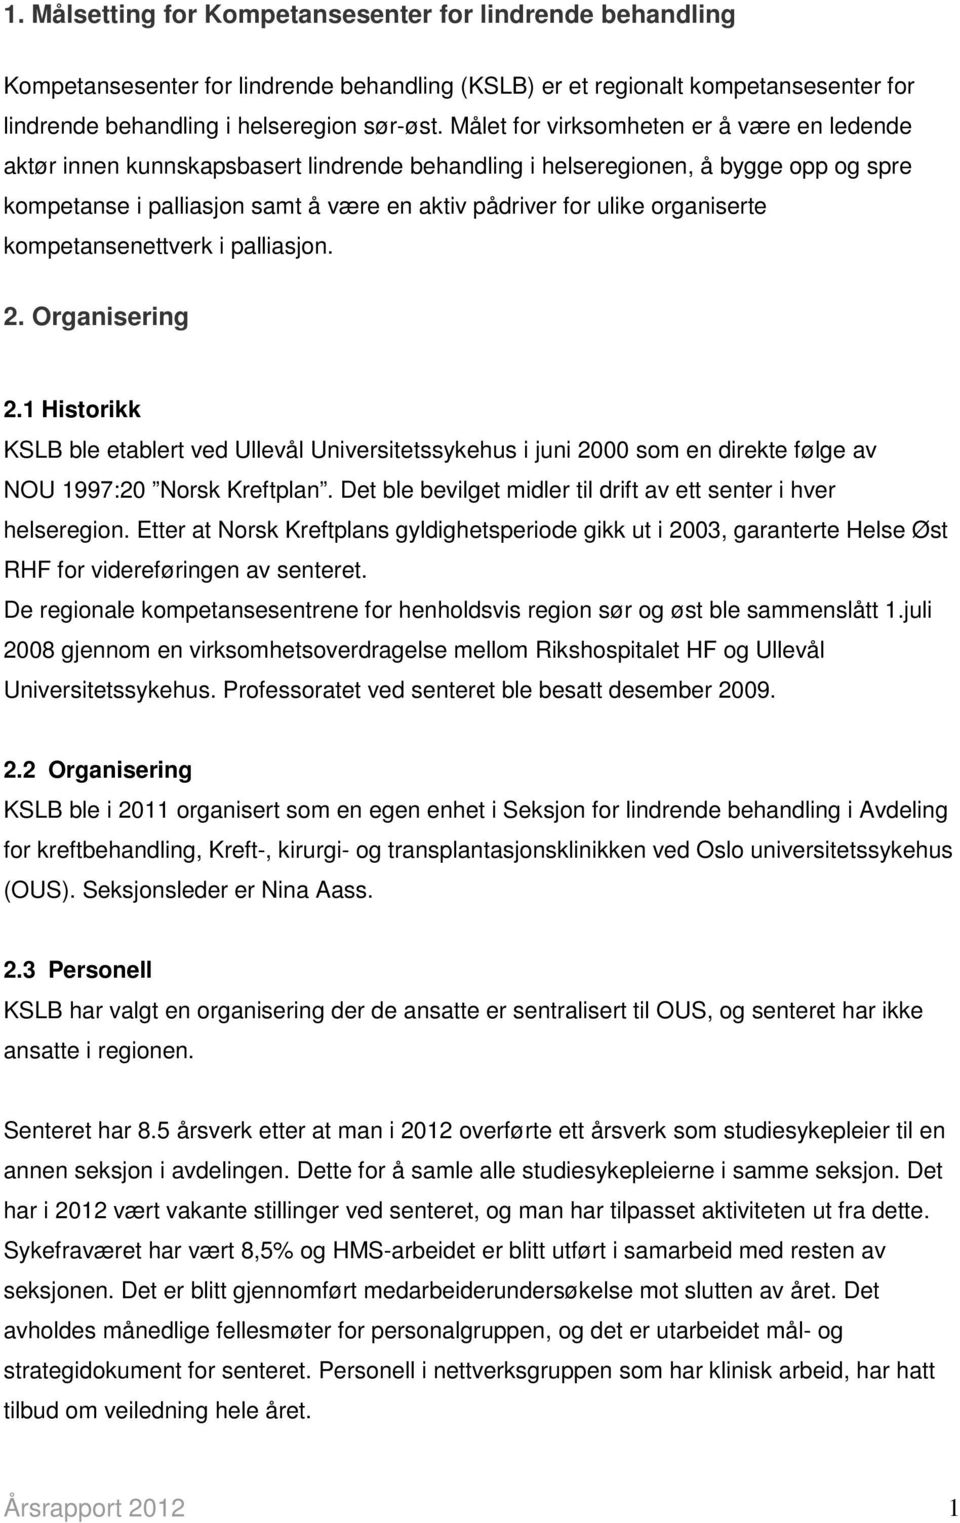 organiserte kompetansenettverk i palliasjon. 2. Organisering 2.1 Historikk KSLB ble etablert ved Ullevål Universitetssykehus i juni 2000 som en direkte følge av NOU 1997:20 Norsk Kreftplan.